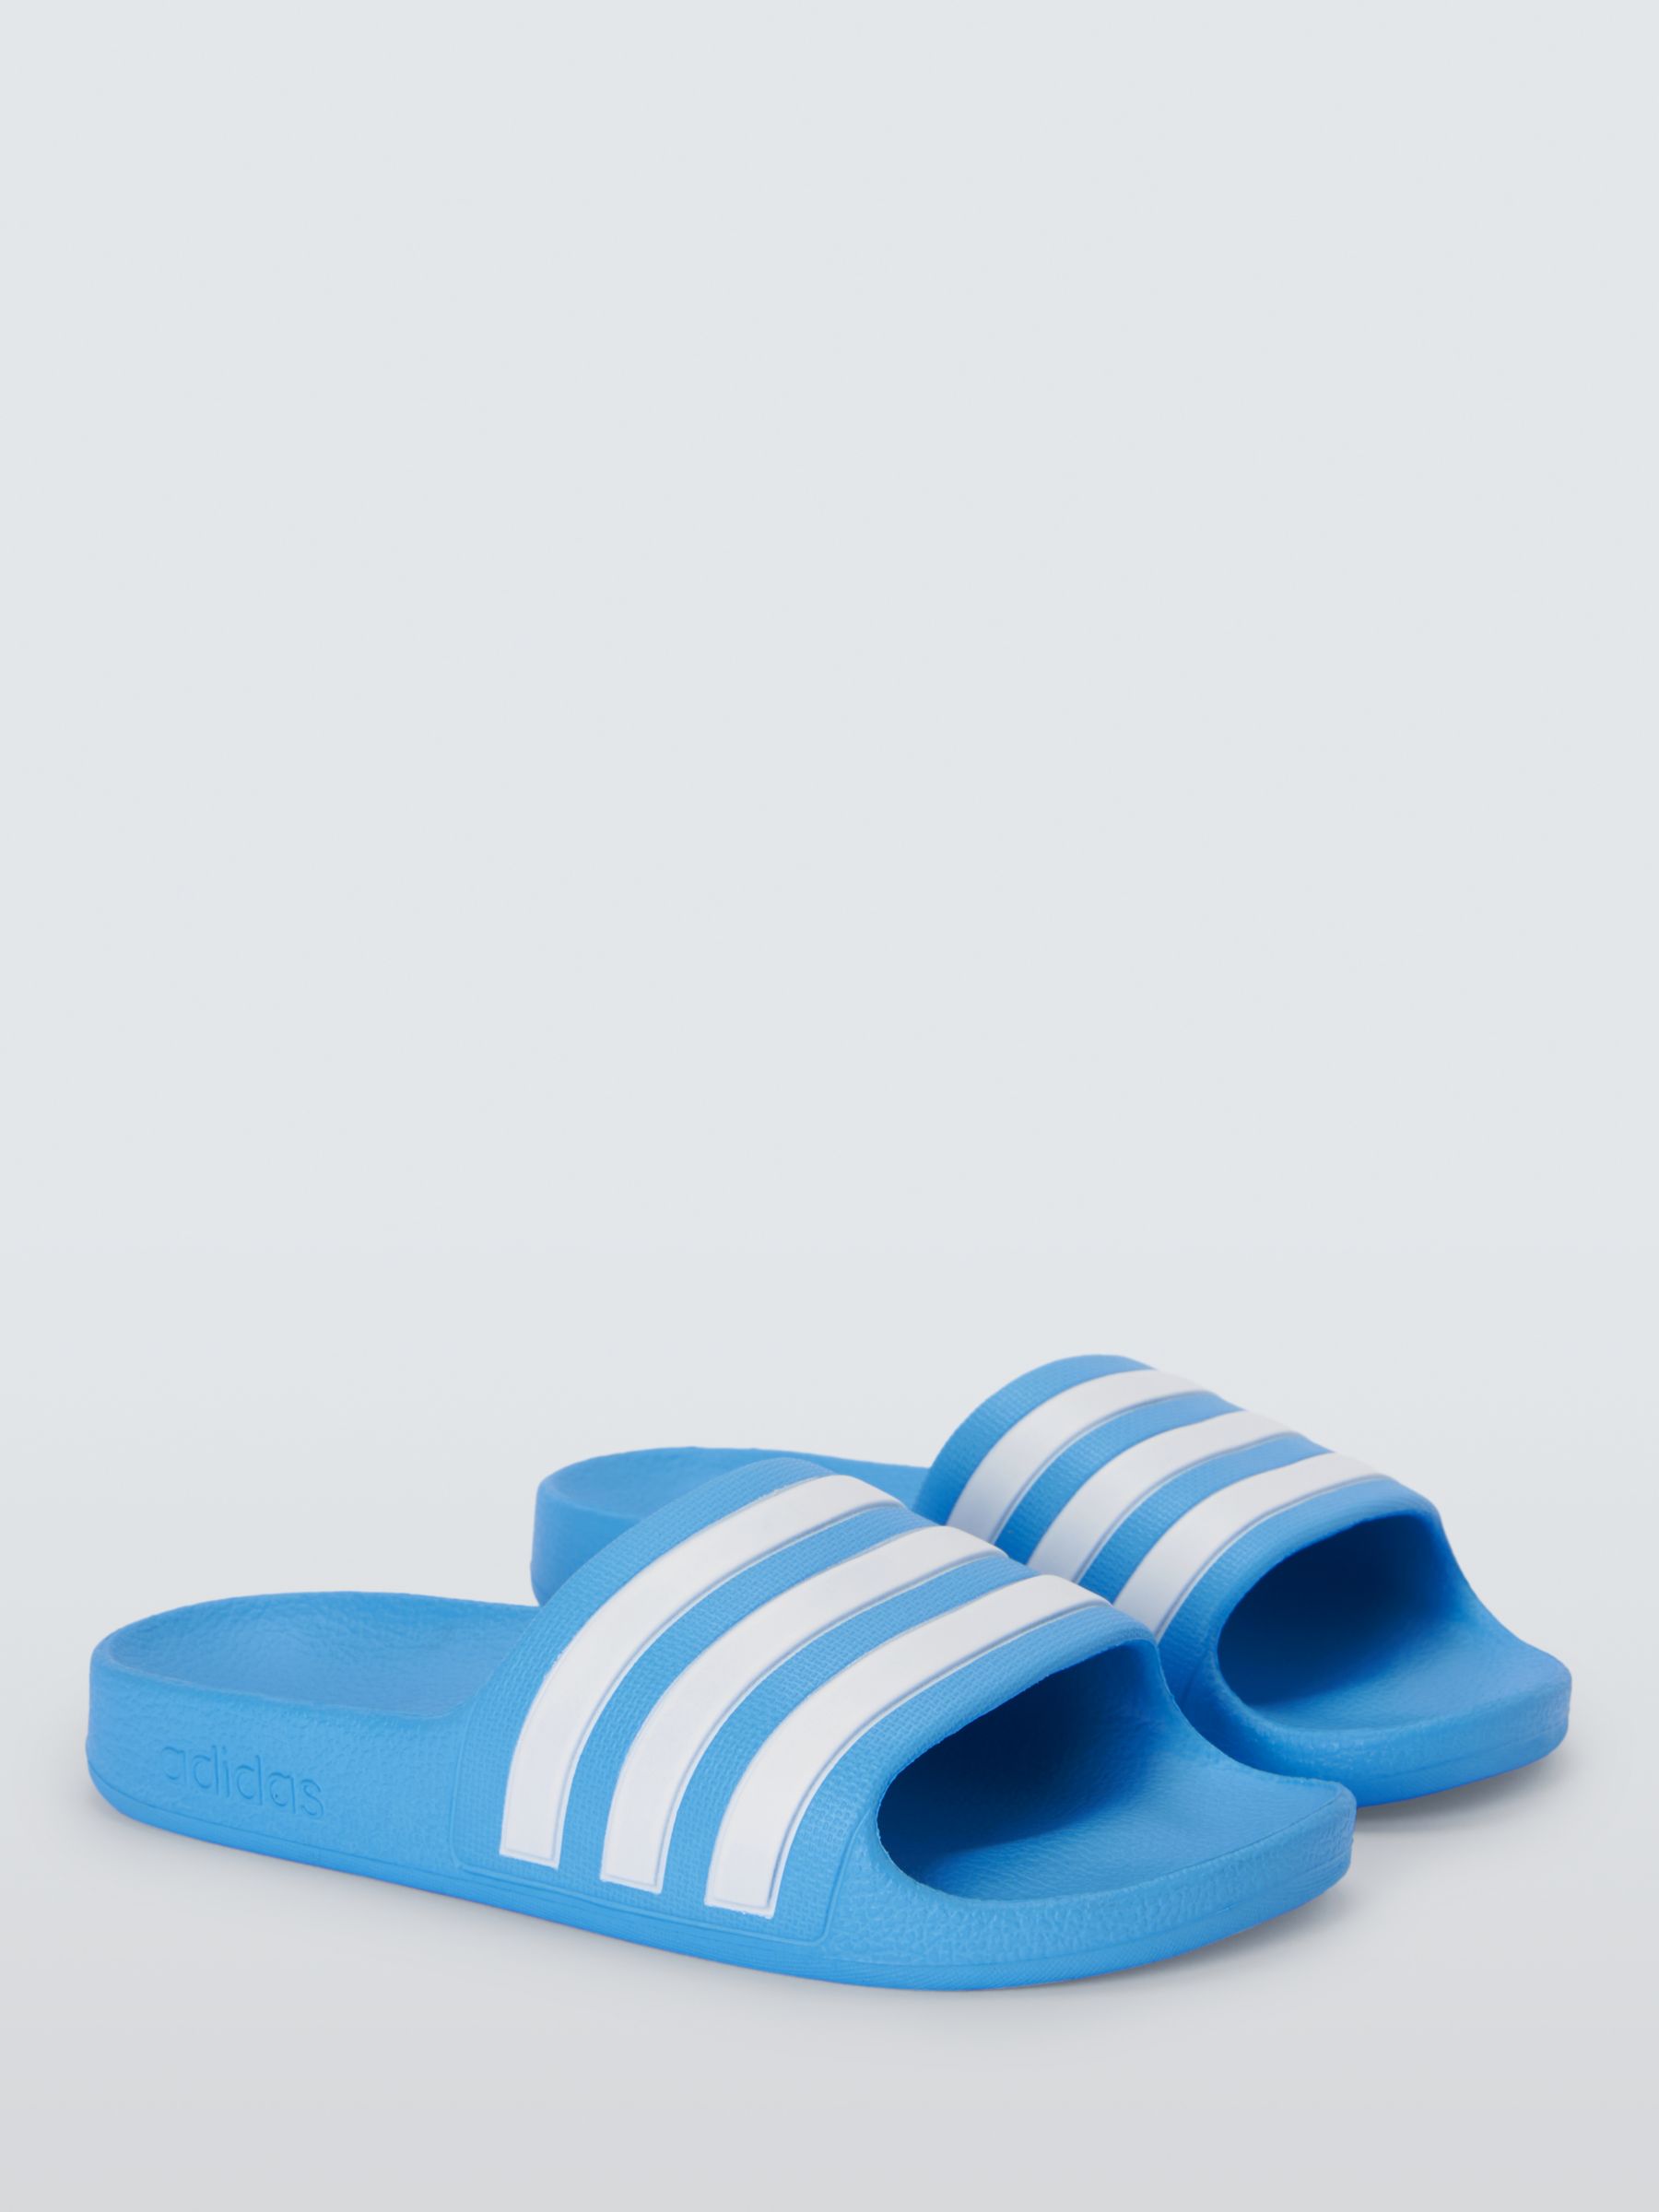 adidas Kids' Adilette Aqua Shower Stripe Sliders, Blue, 1